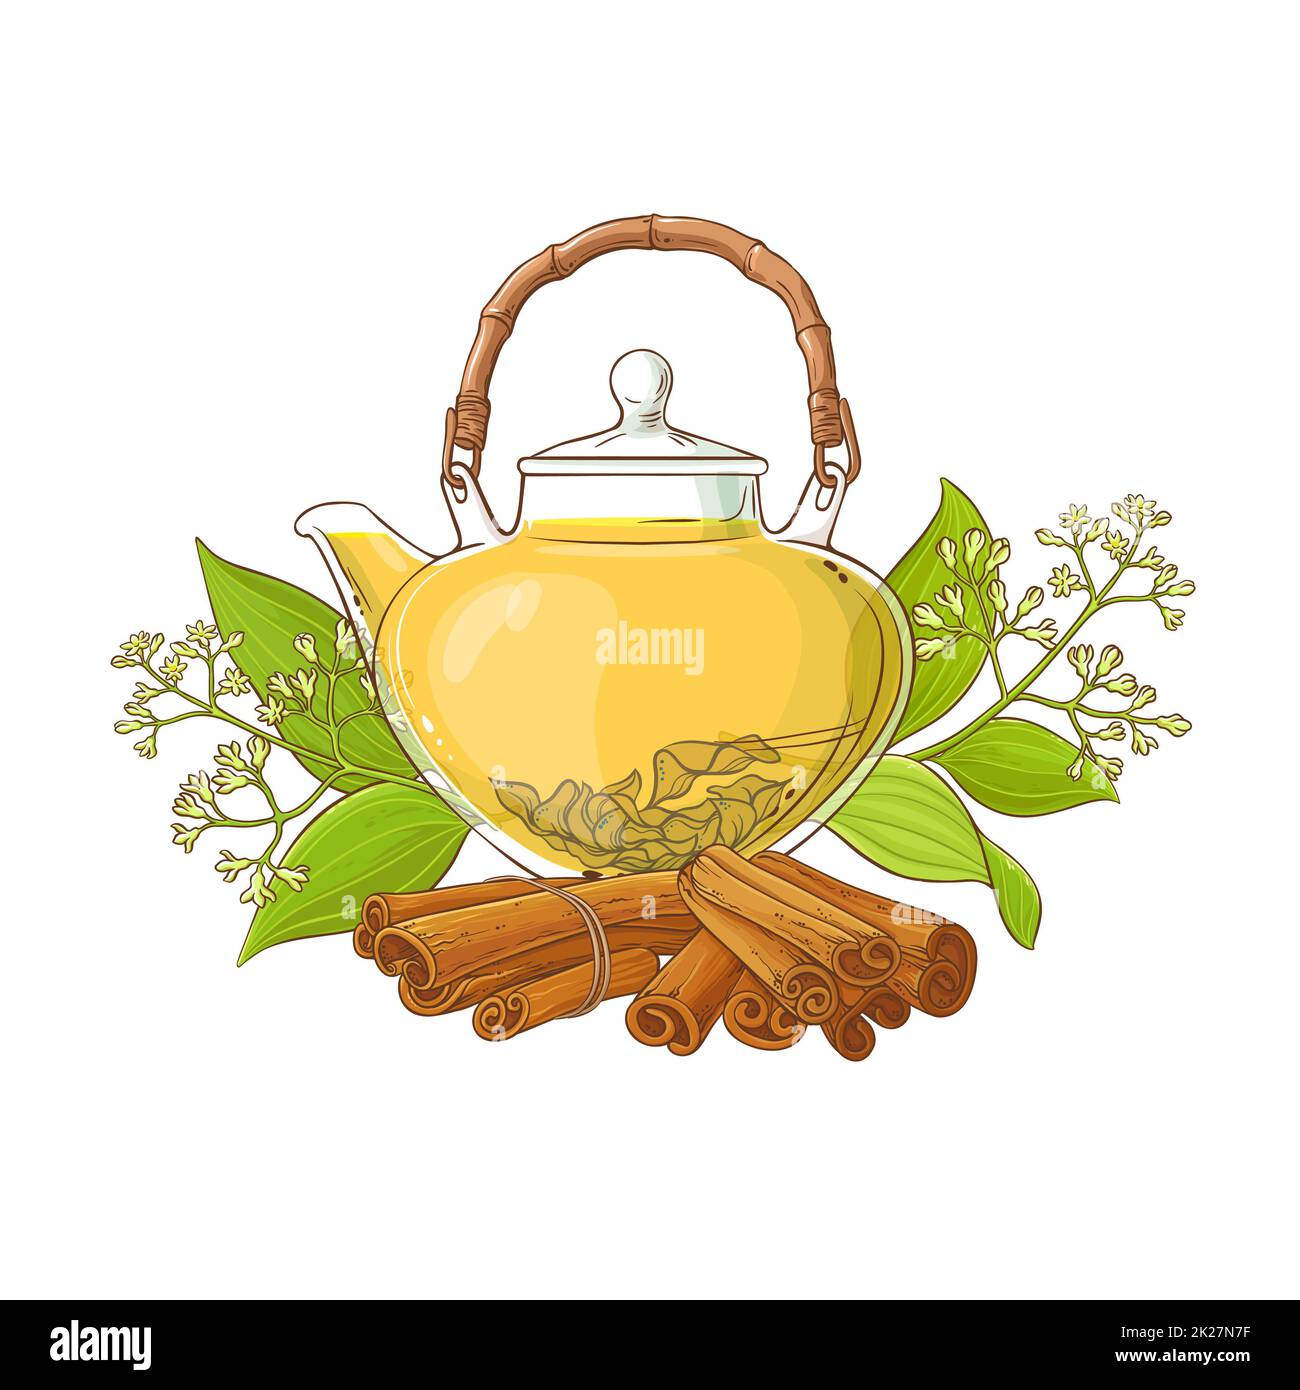 cinnamon tea illustration Stock Photo